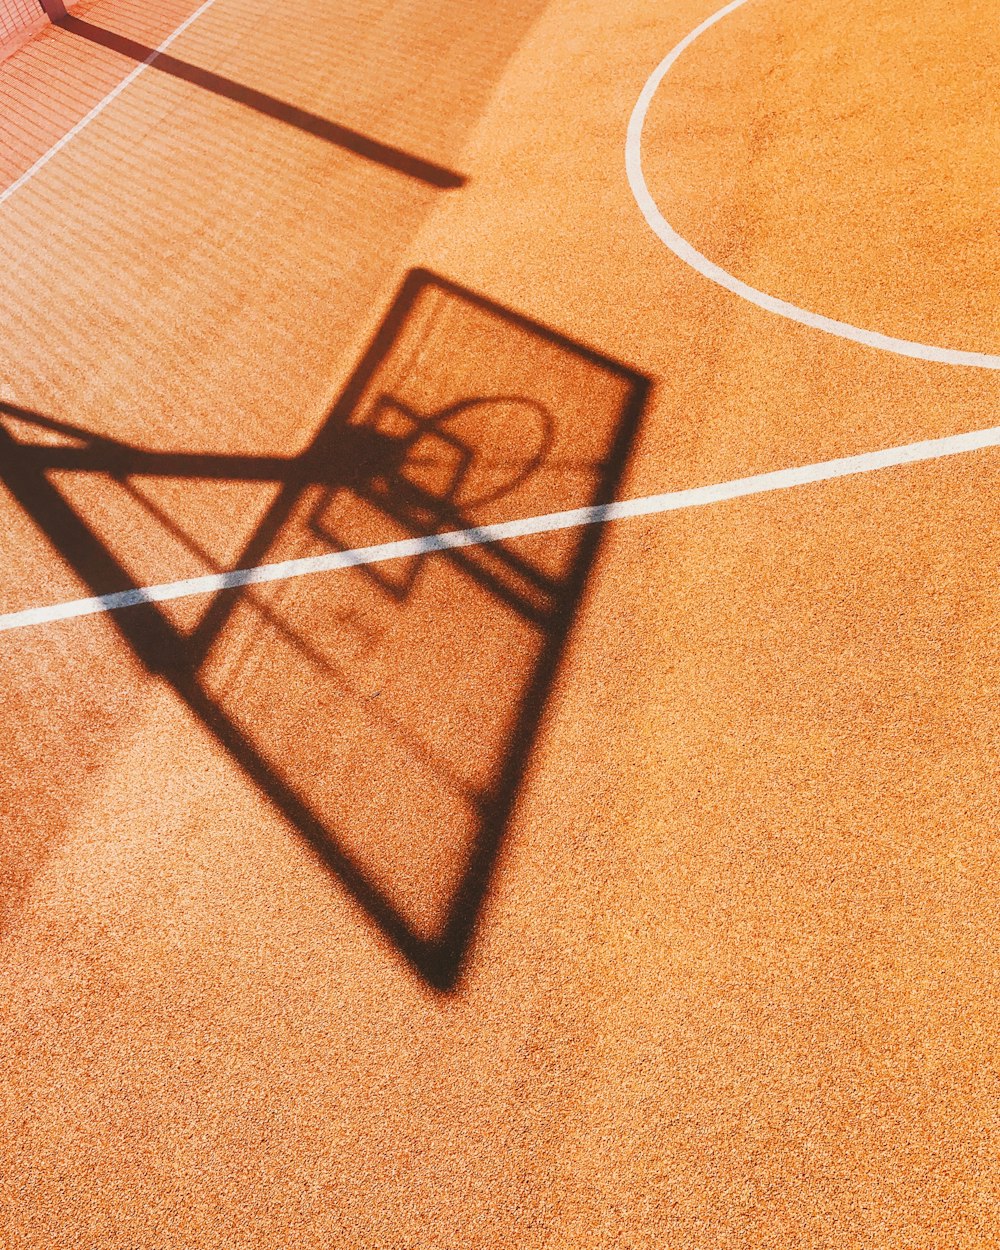 Schatten des Basketballkorbs